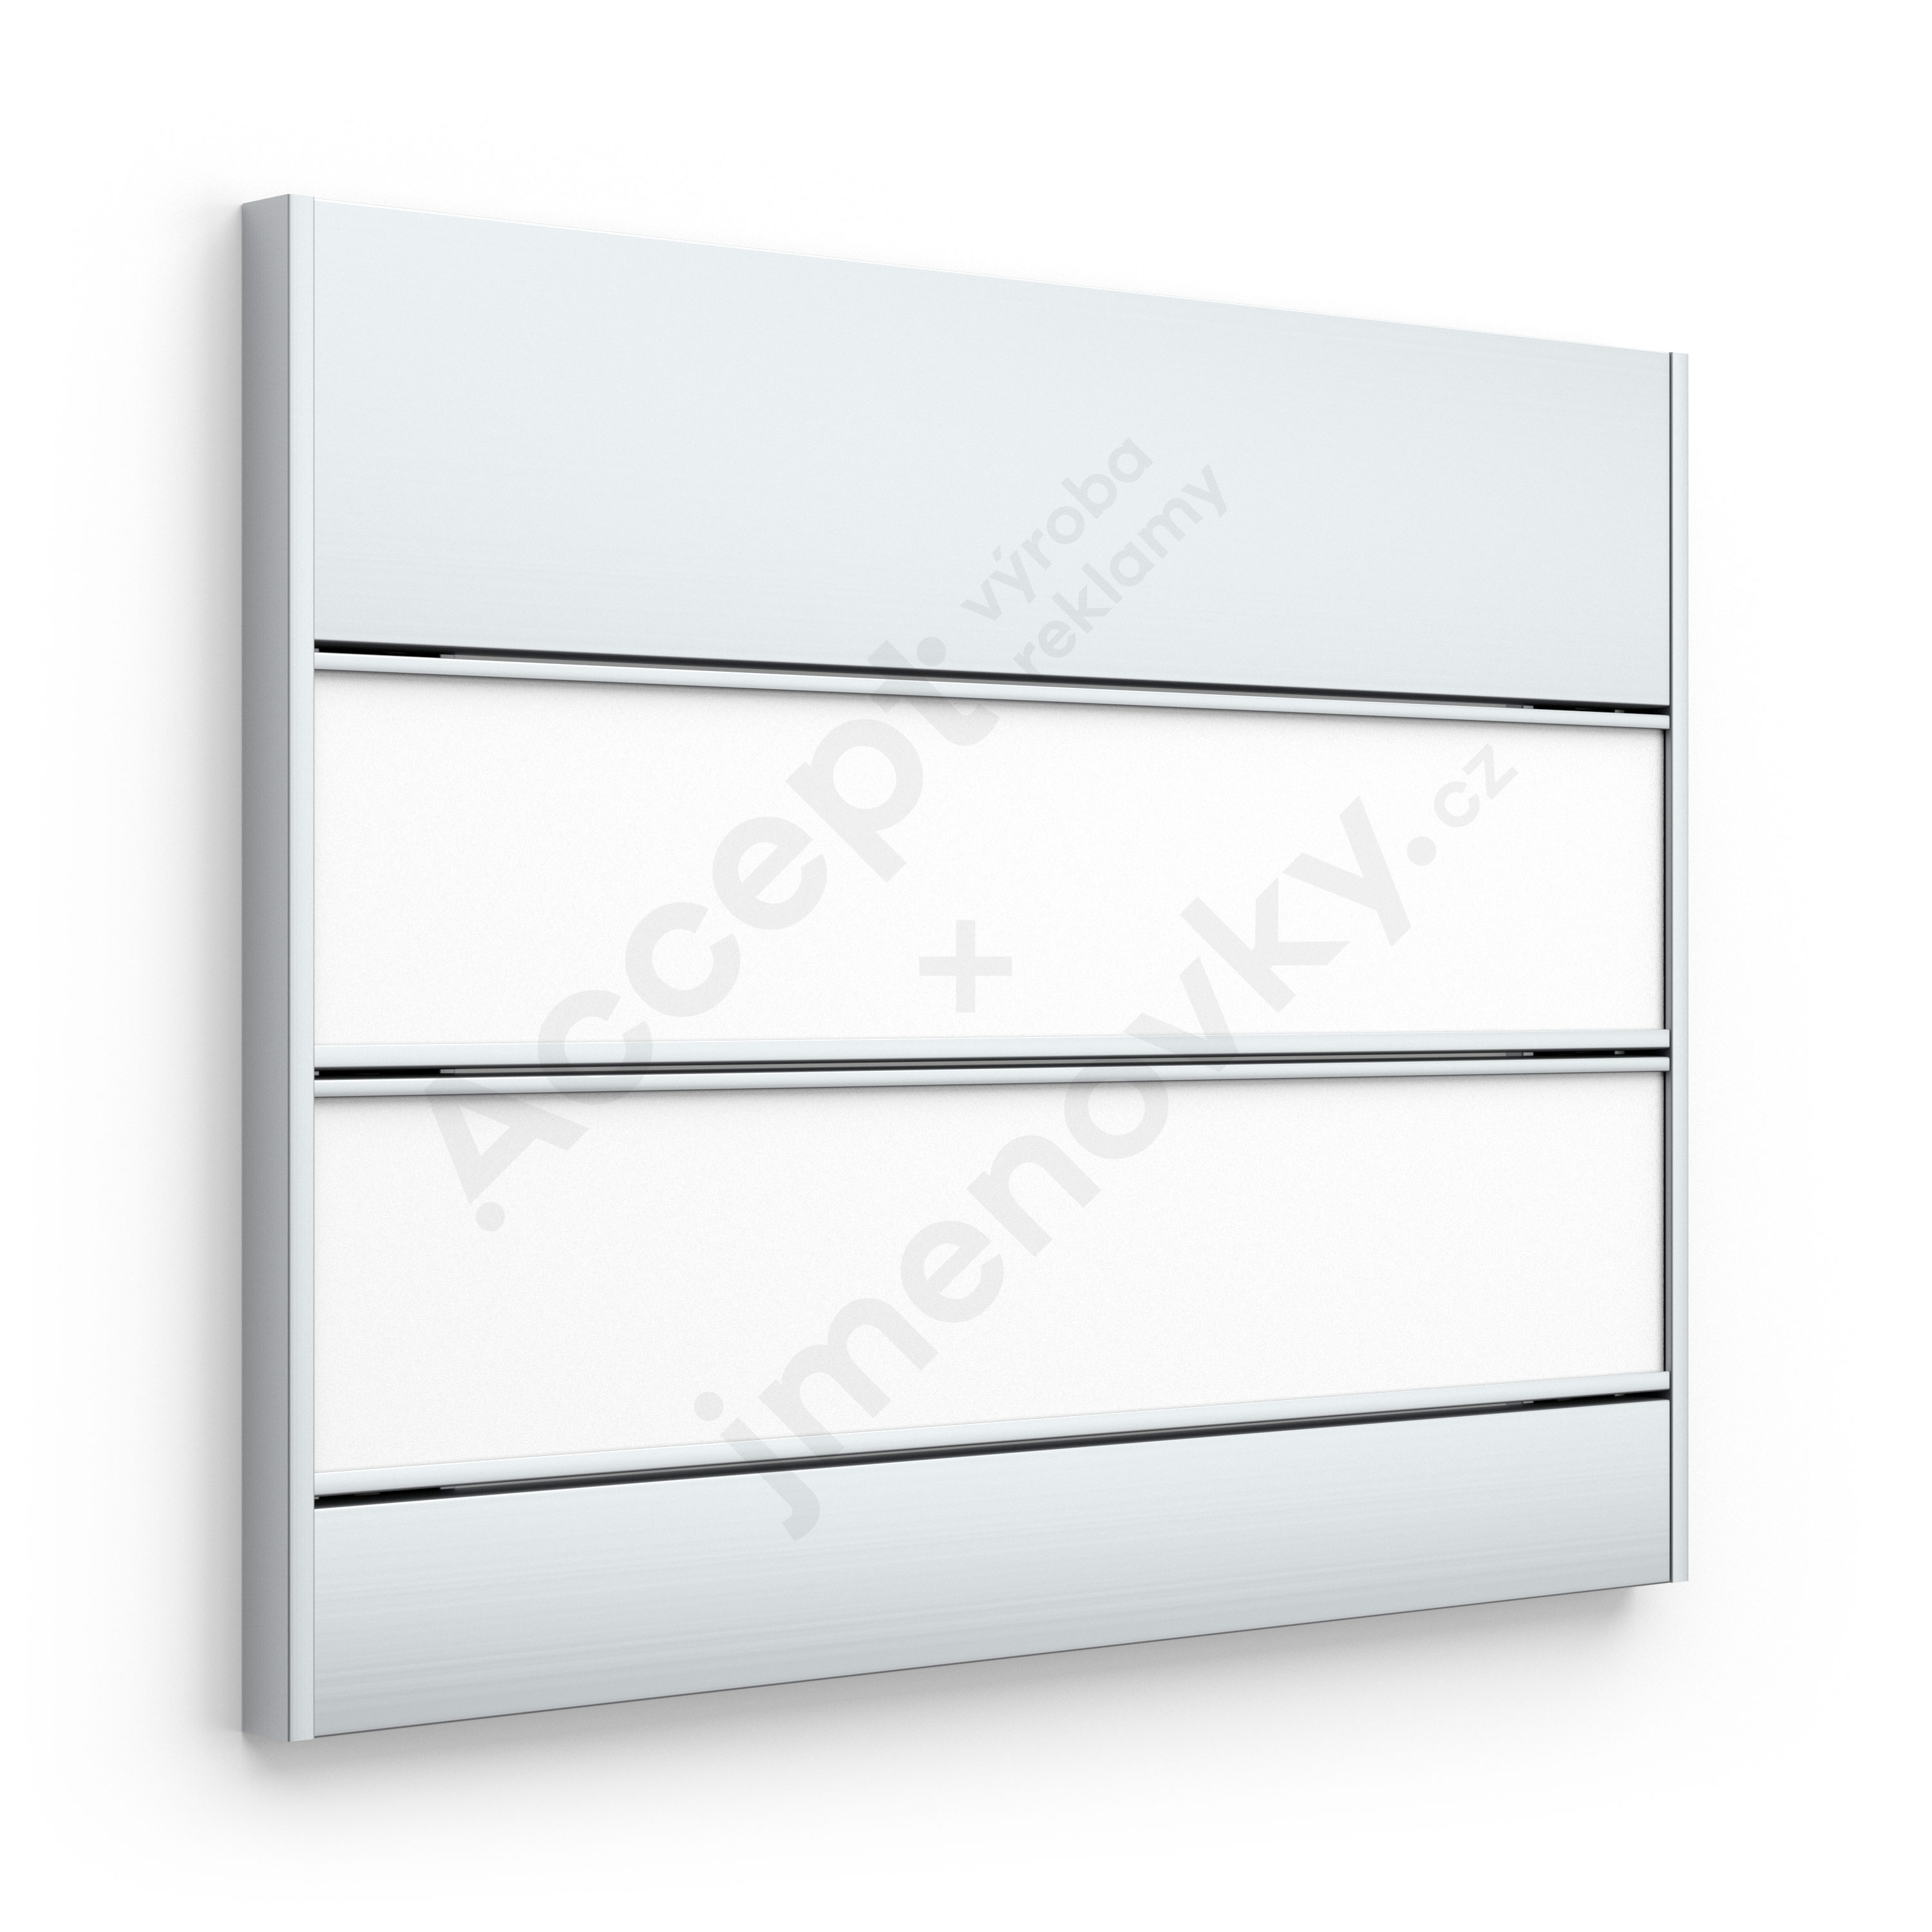 ACCEPT Dveřní tabulka SlimSlatz (zásuvný systém, rovné bočnice, 187 x 145 mm) - stříbrná tabulka